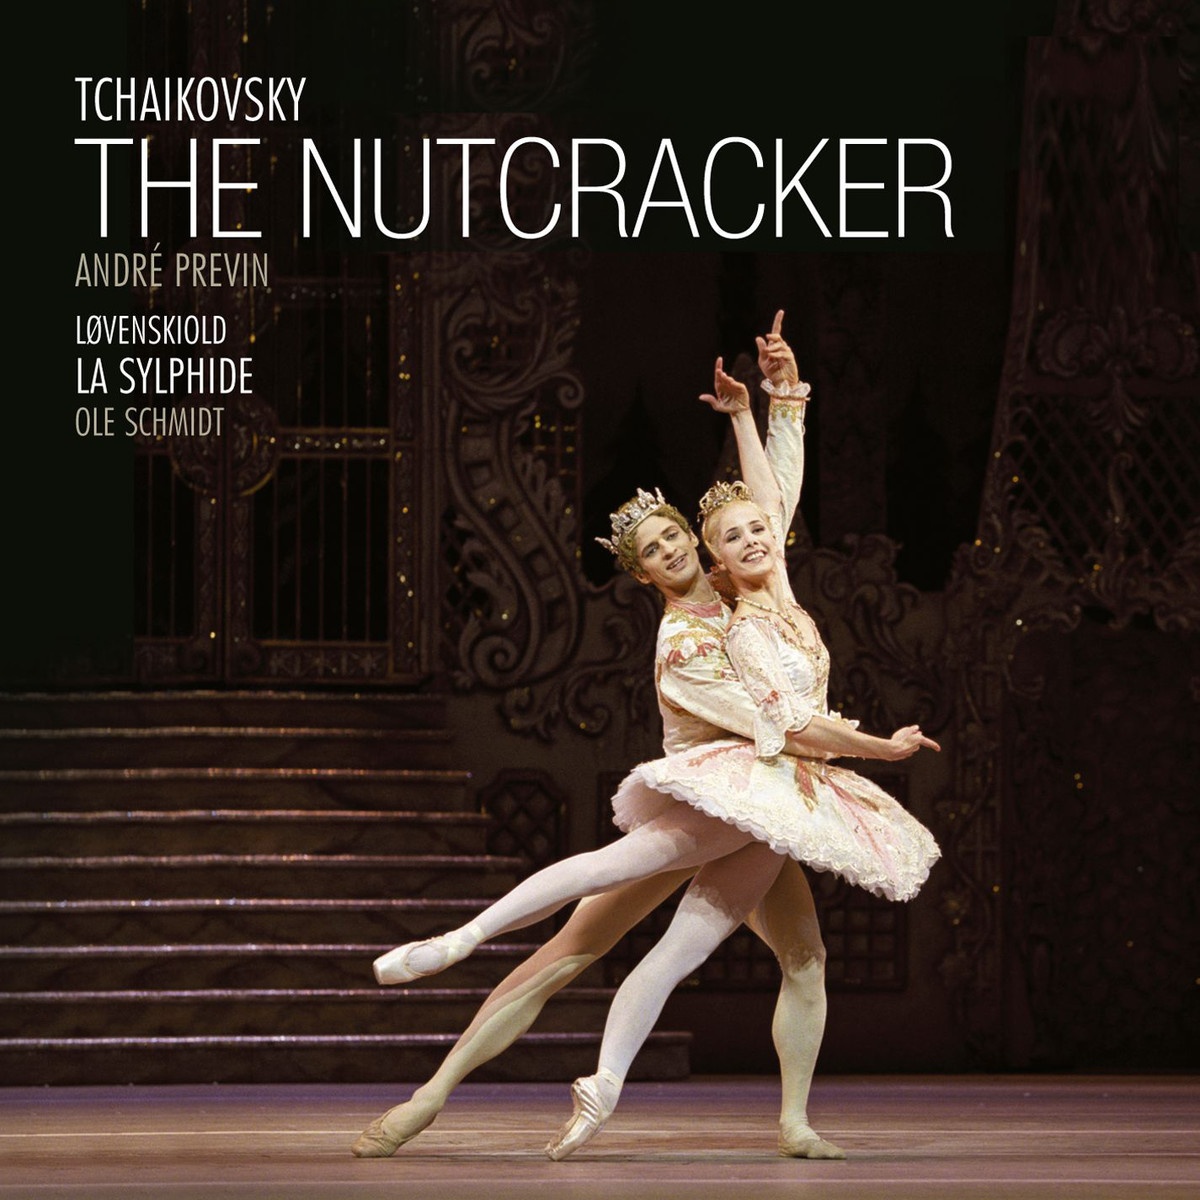 The Nutcracker - Ballet in two acts Op. 71, Act II, Divertissement: Trepak (Russian Dance)